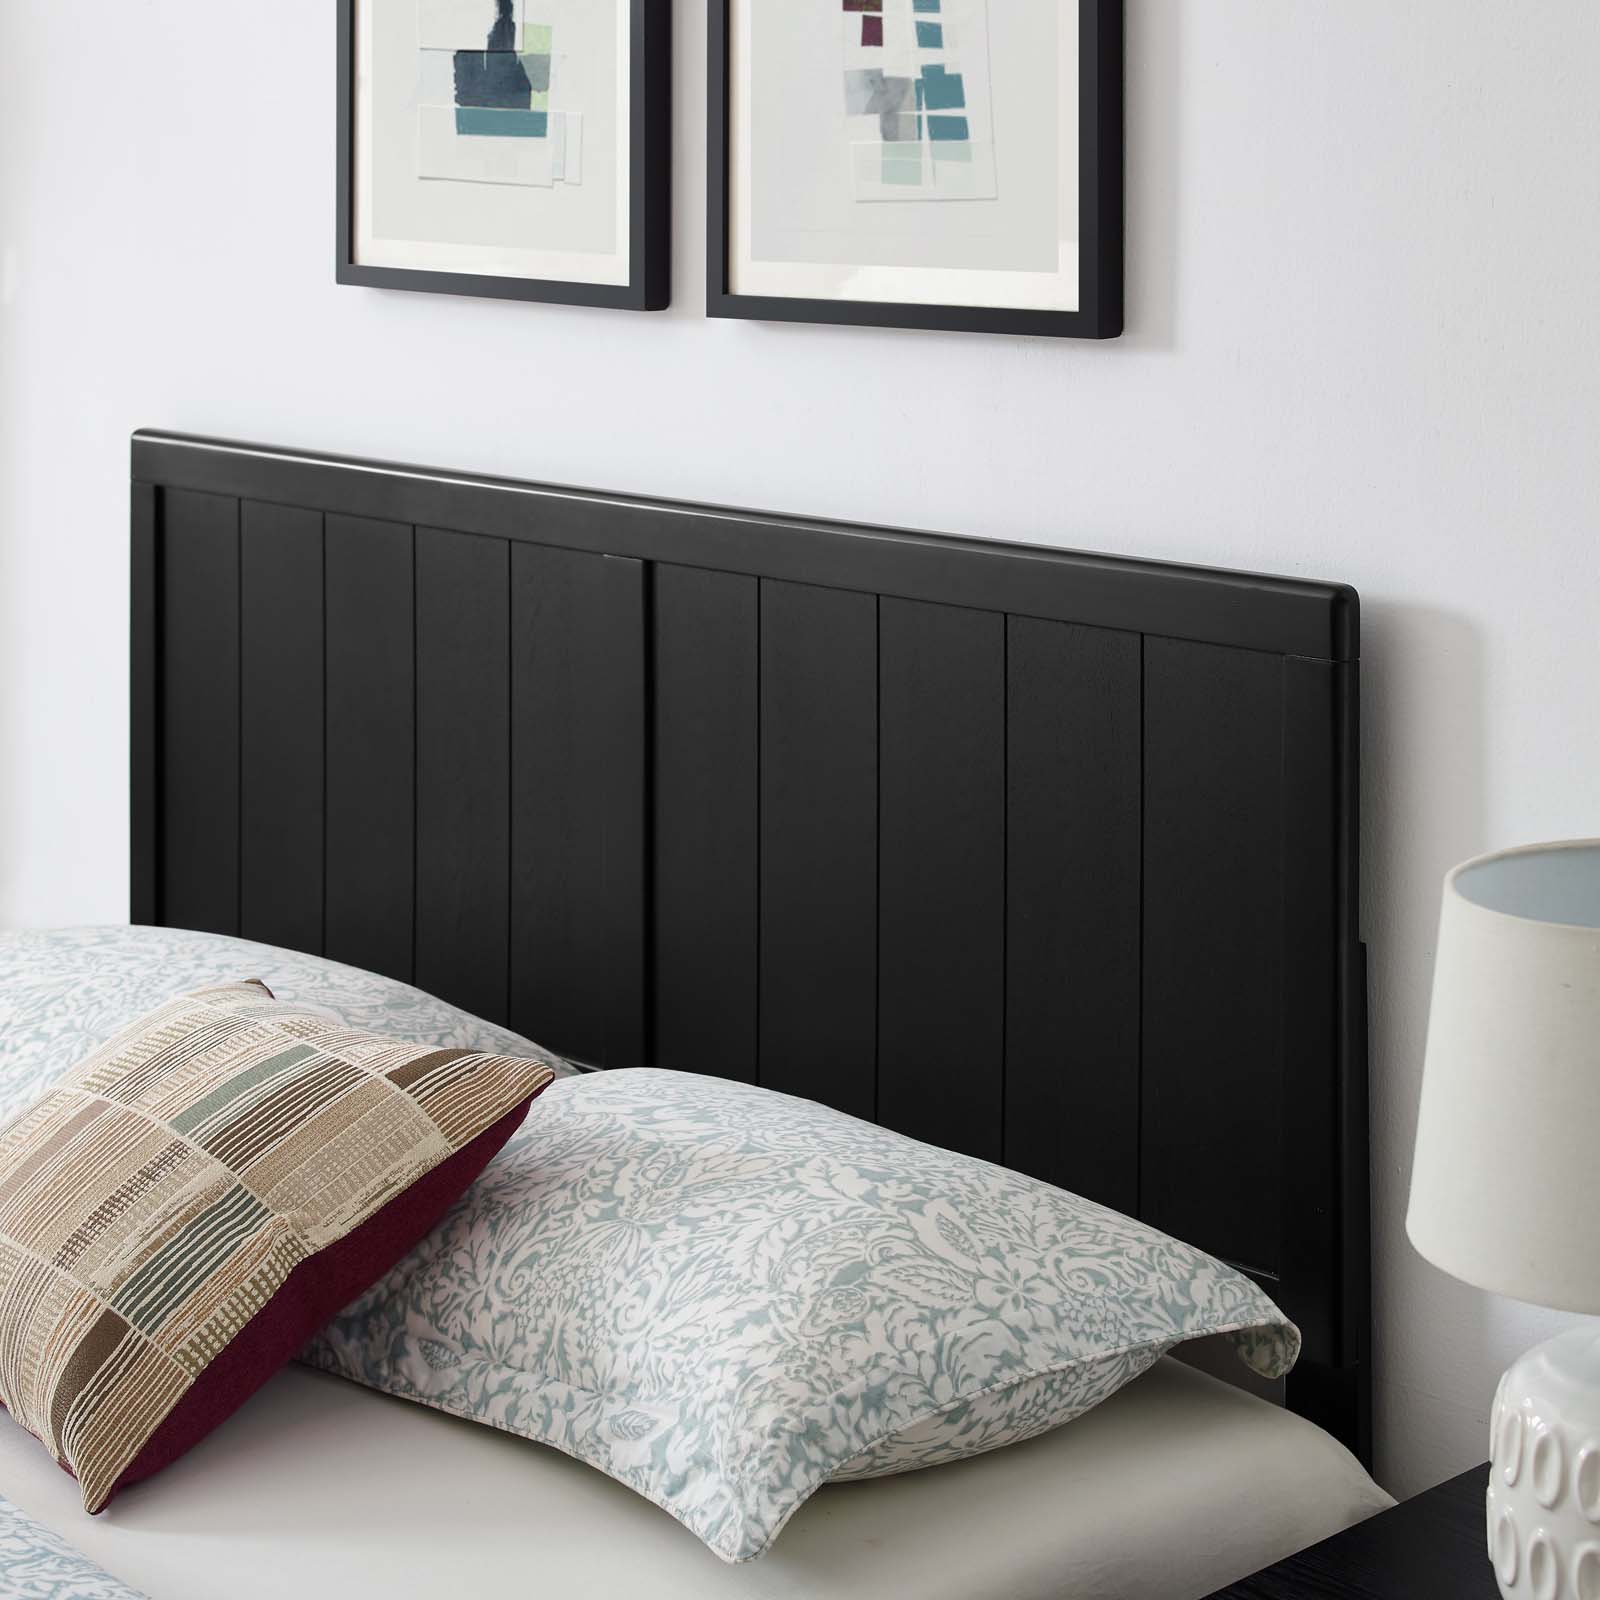 Platform Bed Frame, Full Size, Wood, Black, Modern Contemporary Urban Design, Bedroom Master Guest Suite - image 2 of 10